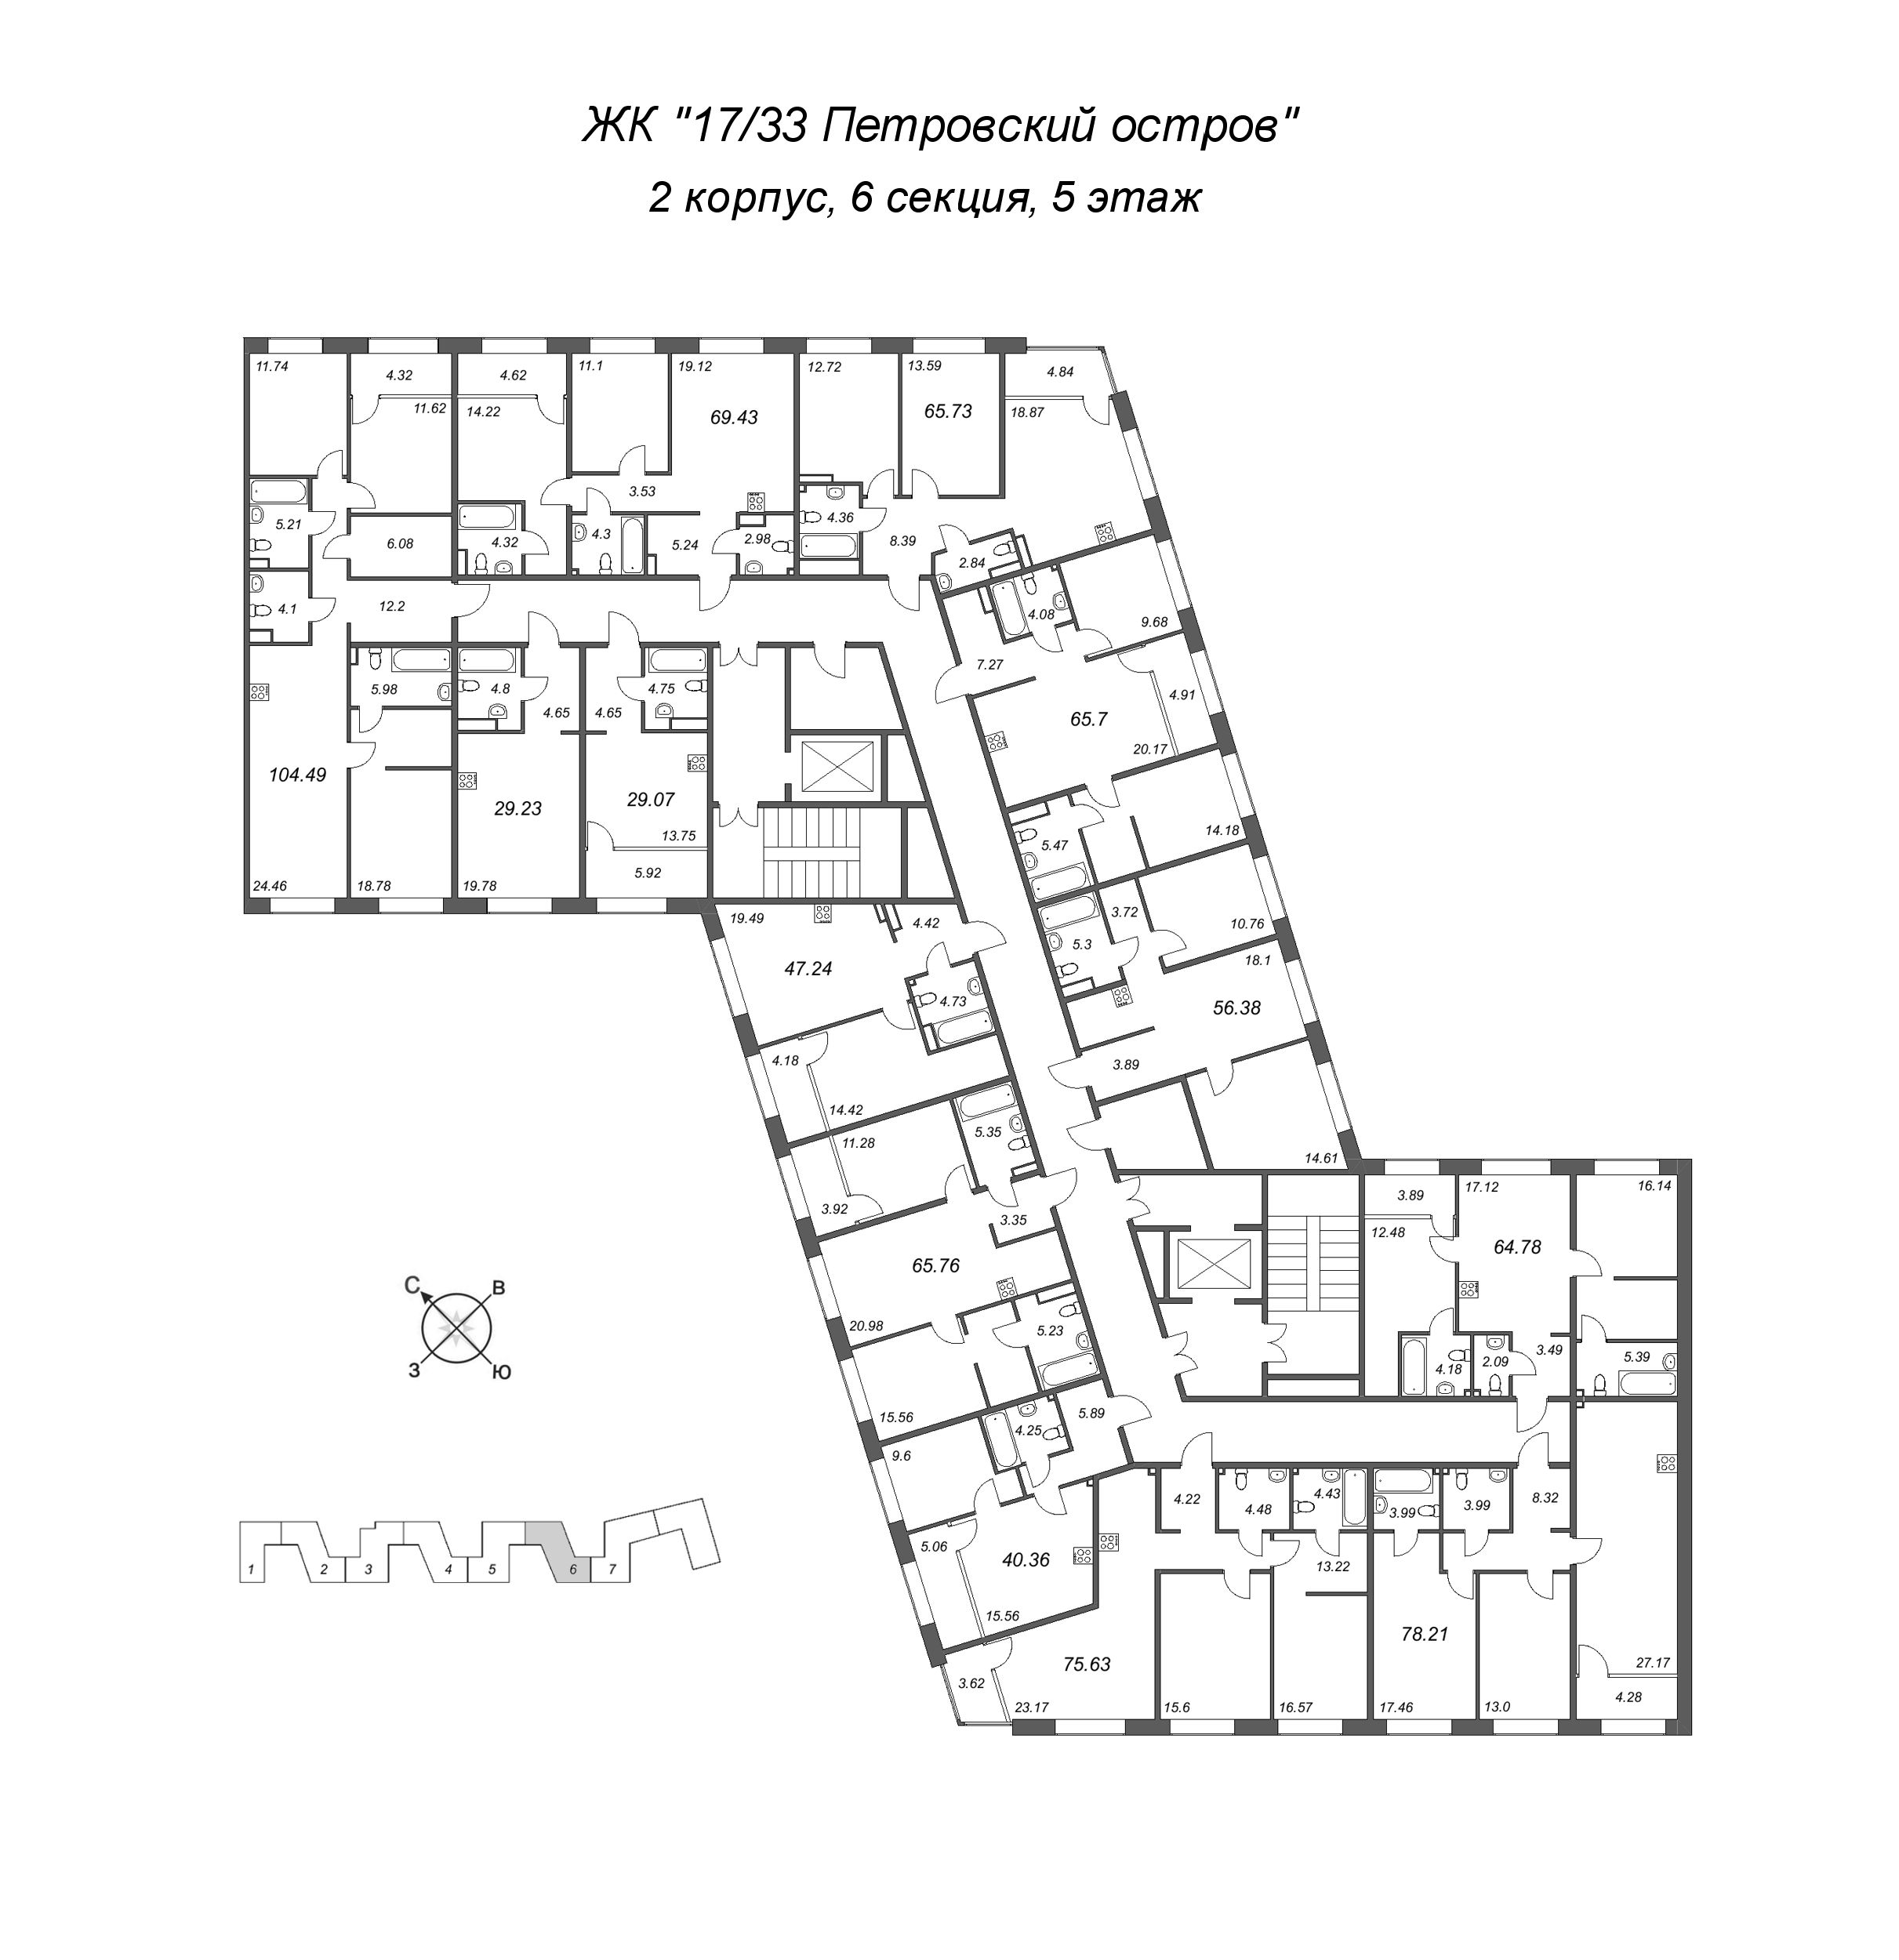 3-комнатная (Евро) квартира, 56.38 м² в ЖК "17/33 Петровский остров" - планировка этажа